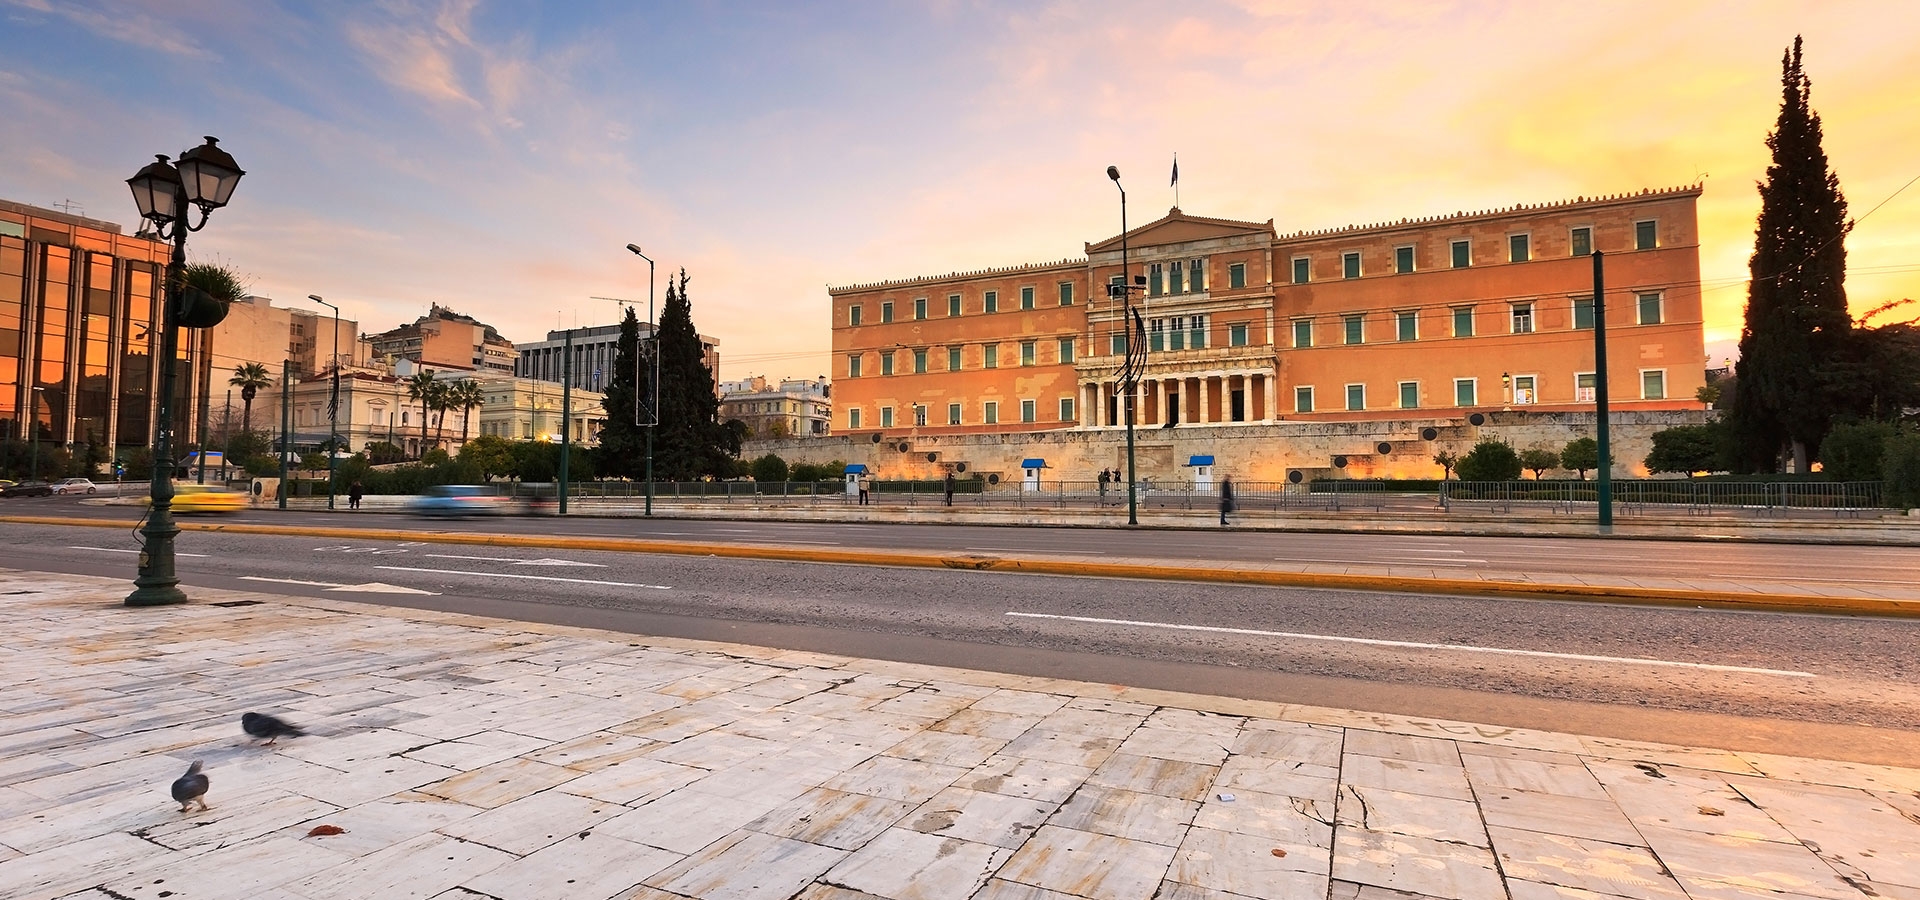 ميدان سينتاجما أثينا اليونان